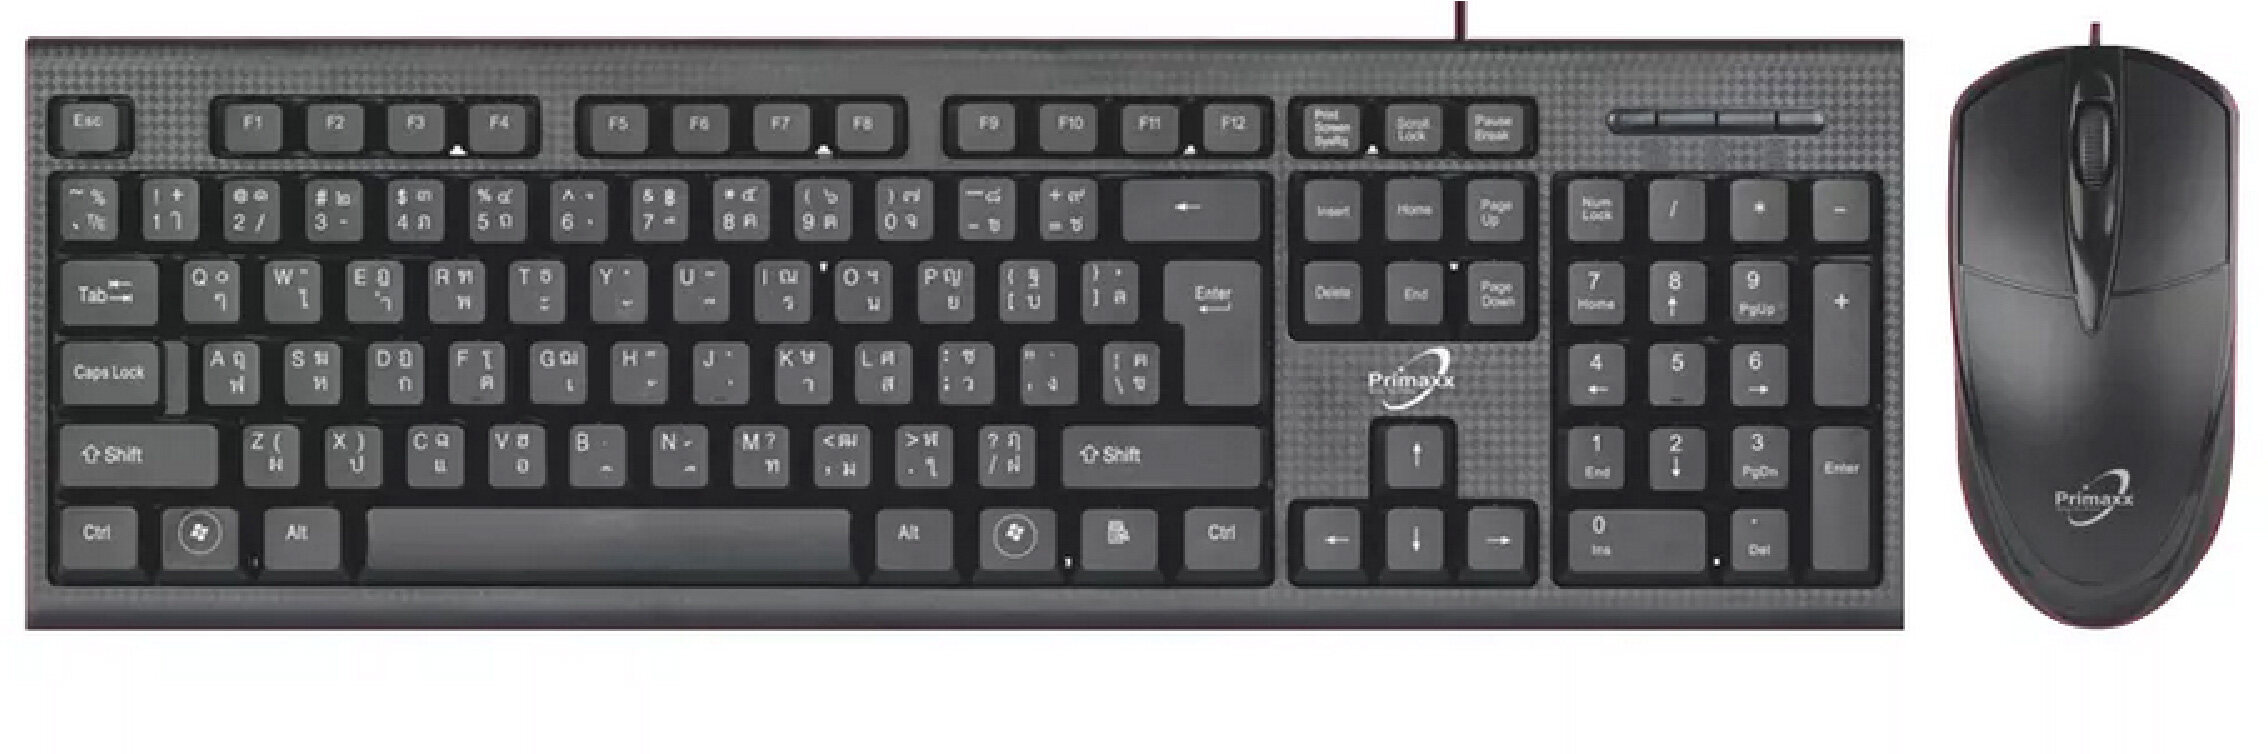 Keyboard+Mouse USB ชุดคีย์บอร์ดกันน้ำ+เมาส์   แป้นภาษาไทย